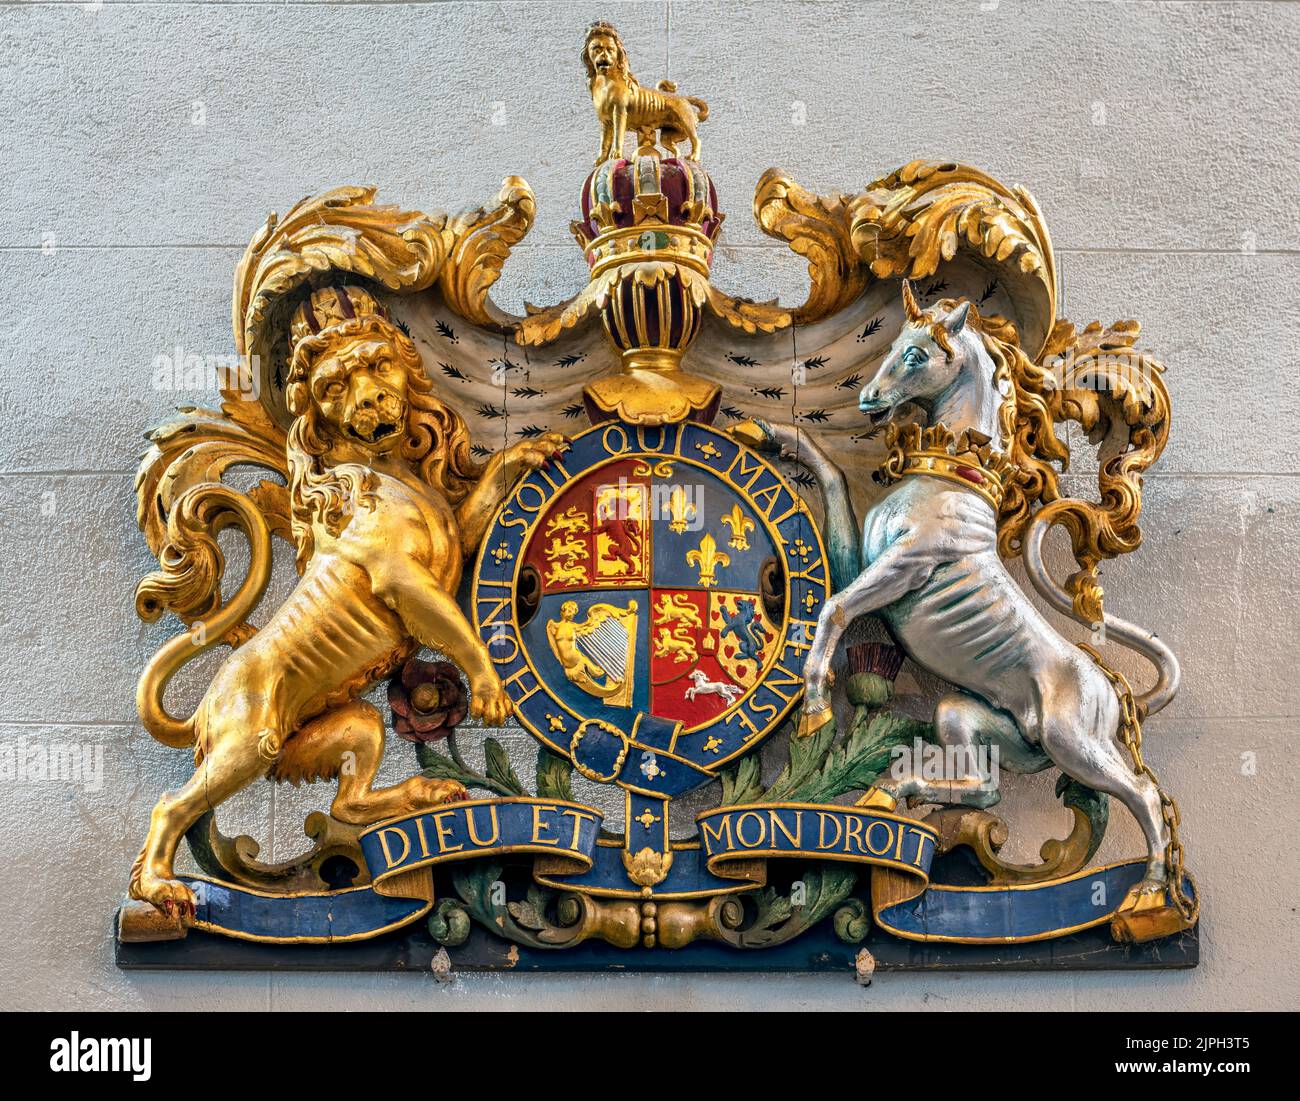 Les armoiries royales de Grande-Bretagne - le lion et la licorne soutenant un bouclier pour représenter respectivement l'Angleterre et l'Écosse. La sov se trouve en dessous Banque D'Images